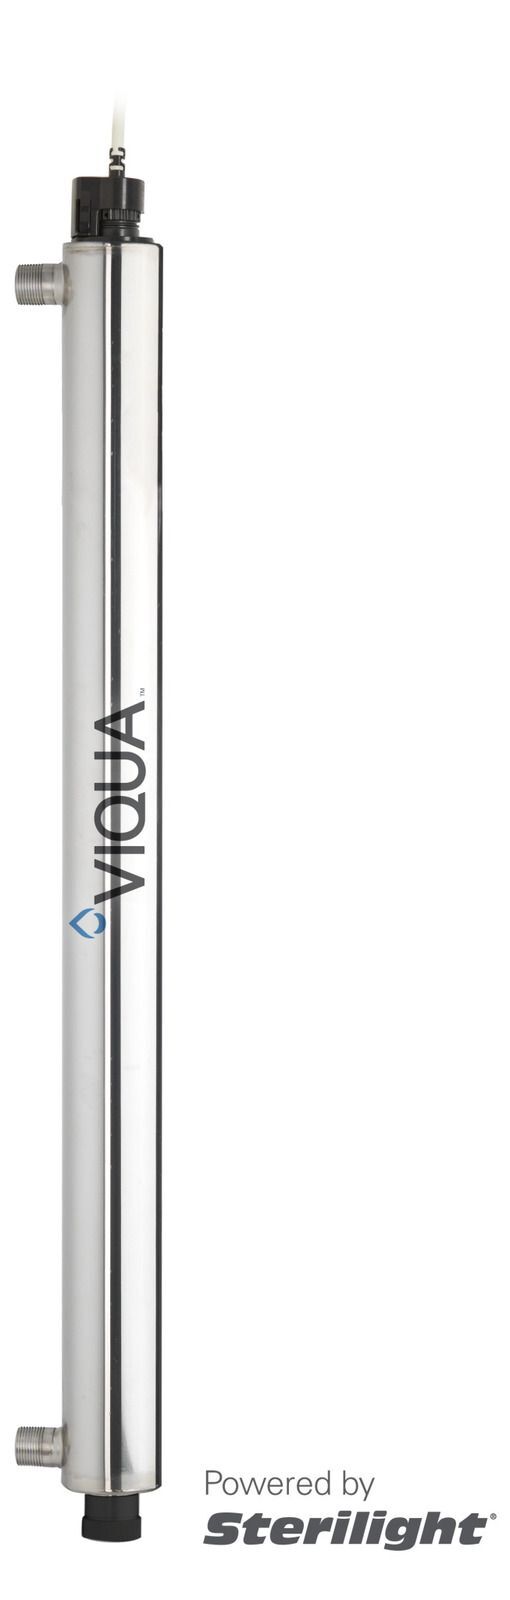 Viqua S8Q-PA/2 UV Disinfection System 38 LPM Aquastream